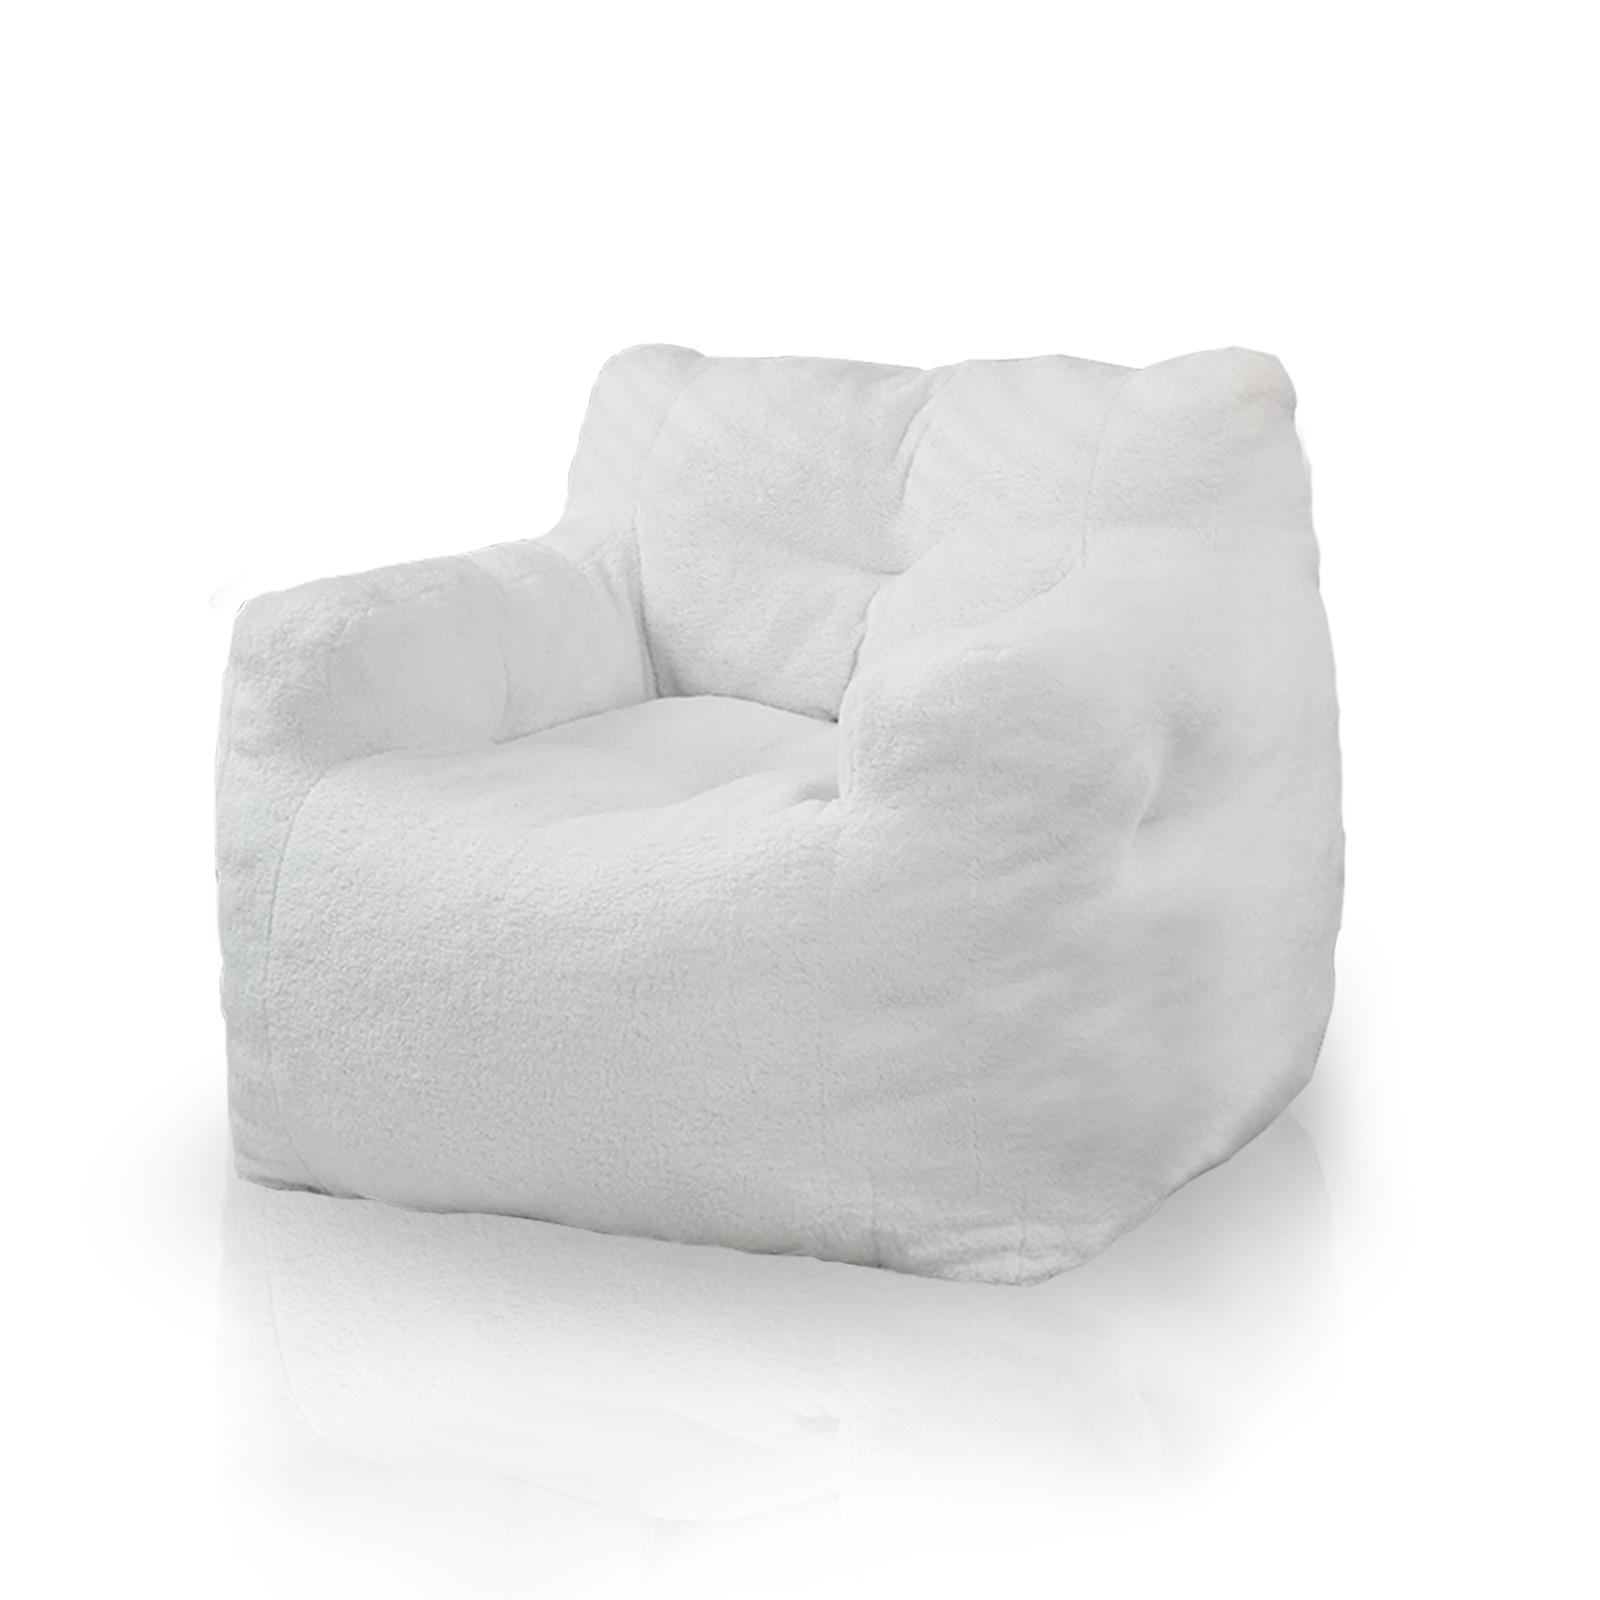 כורסא מעוצבת יוקרתית לבית דגם אנטון בד בוקלה צבע לבן